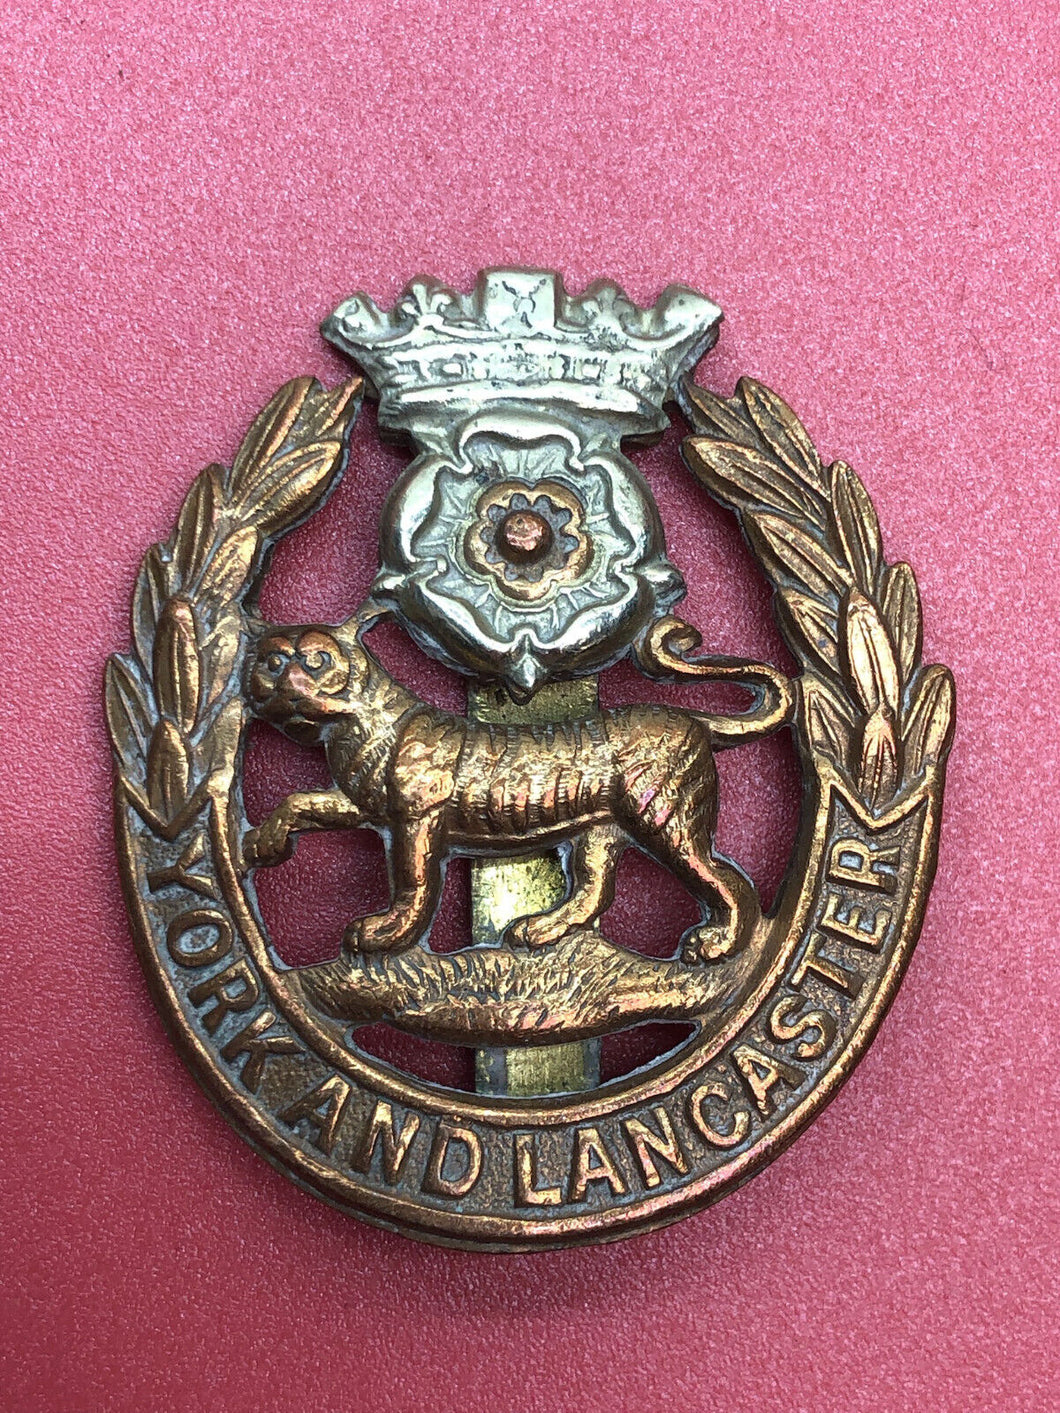 Original WW2 British Army Kings Crown Cap Badge - York and Lancaster Regiment